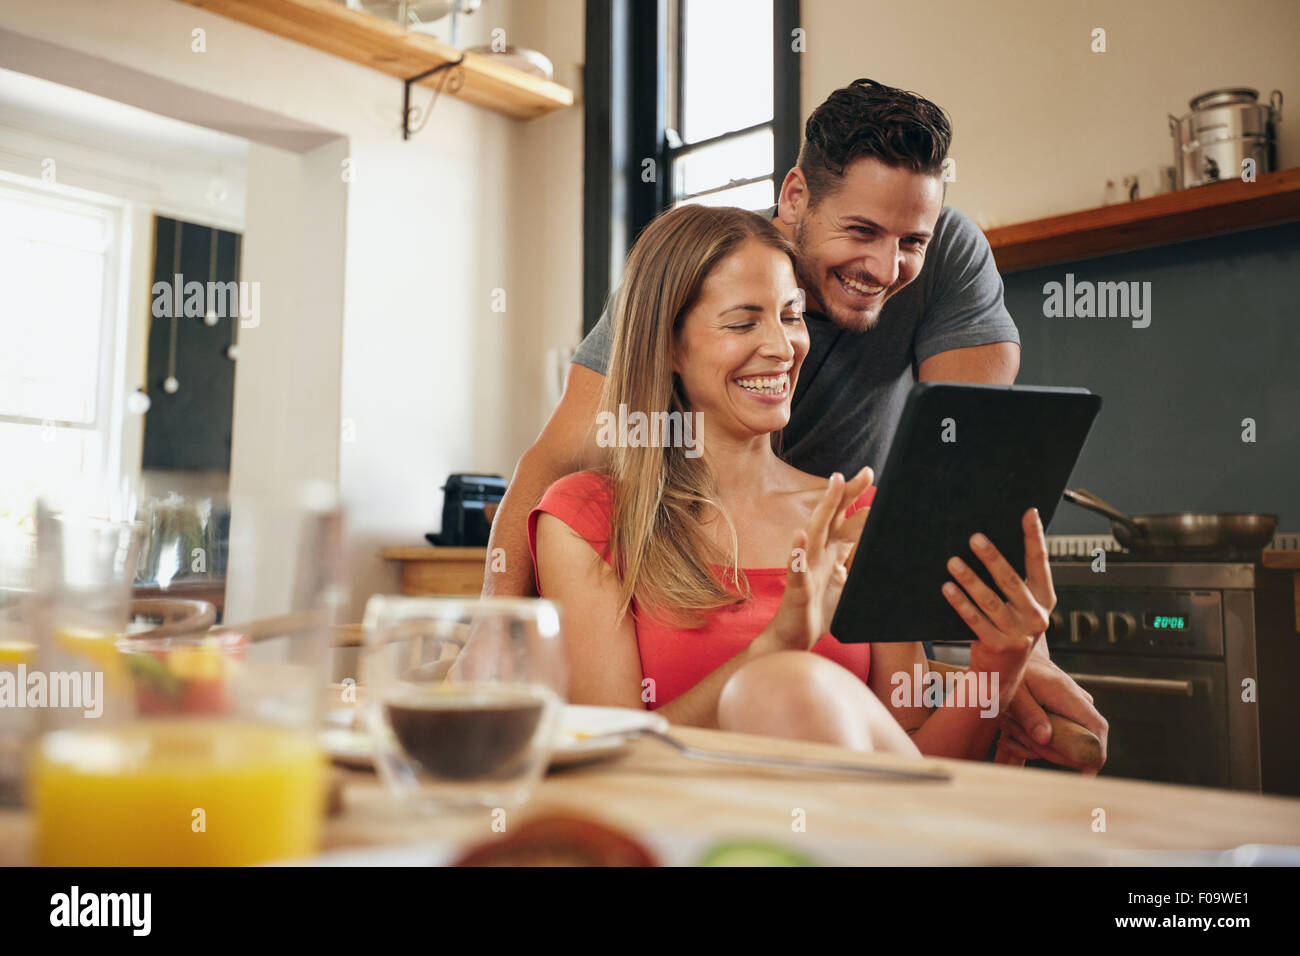 Glückliches junges Paar in der modernen Küche am Morgen mit einem digitalen Tablet. Lächelnde junge Frau zeigen etwas auf ihr bo Stockfoto